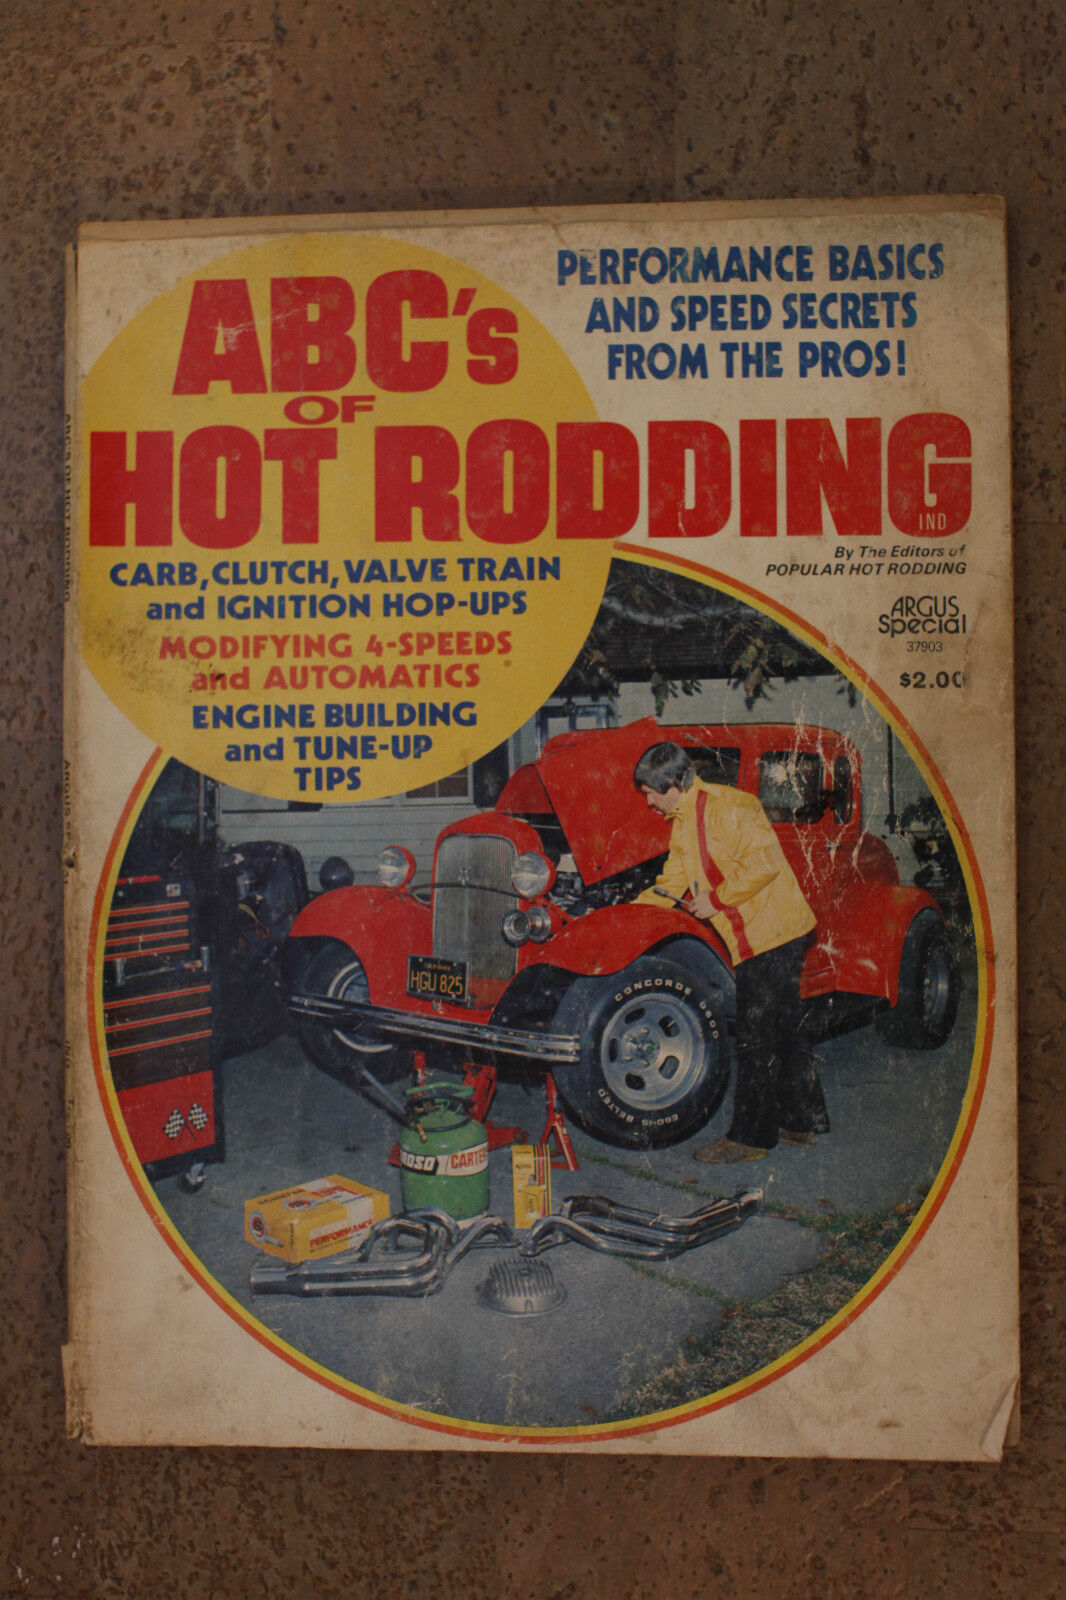 ABC's of HOT RODDING Magazine - ARGUS special 1975